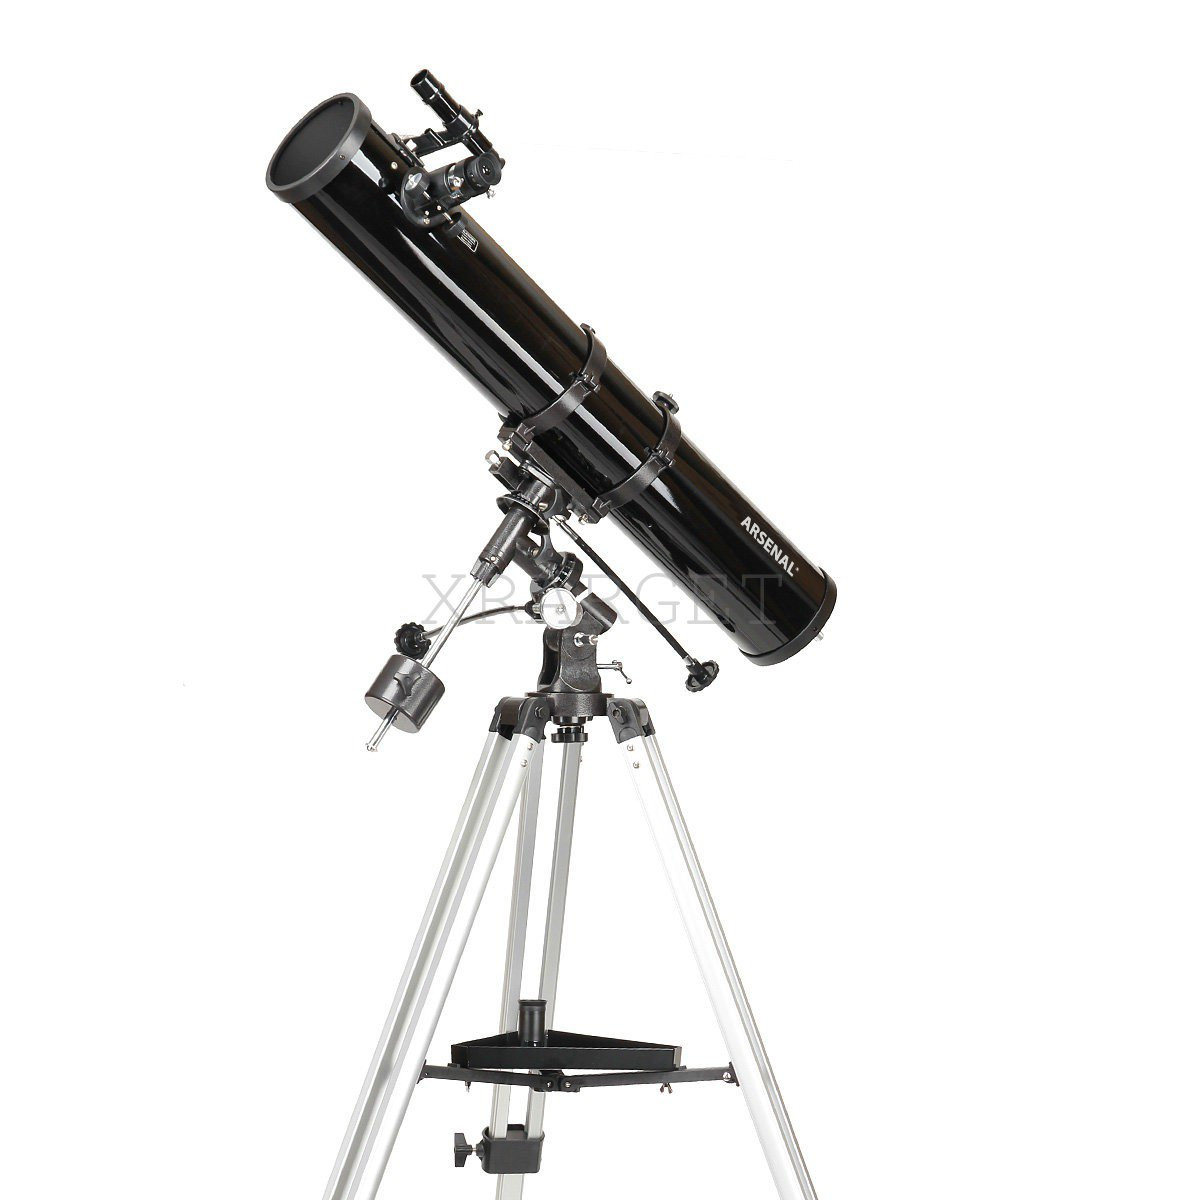 Телескоп Arsenal - Synta 114/900 EQ1 рефлектор Ньютона з окулярами PL63 та PL17